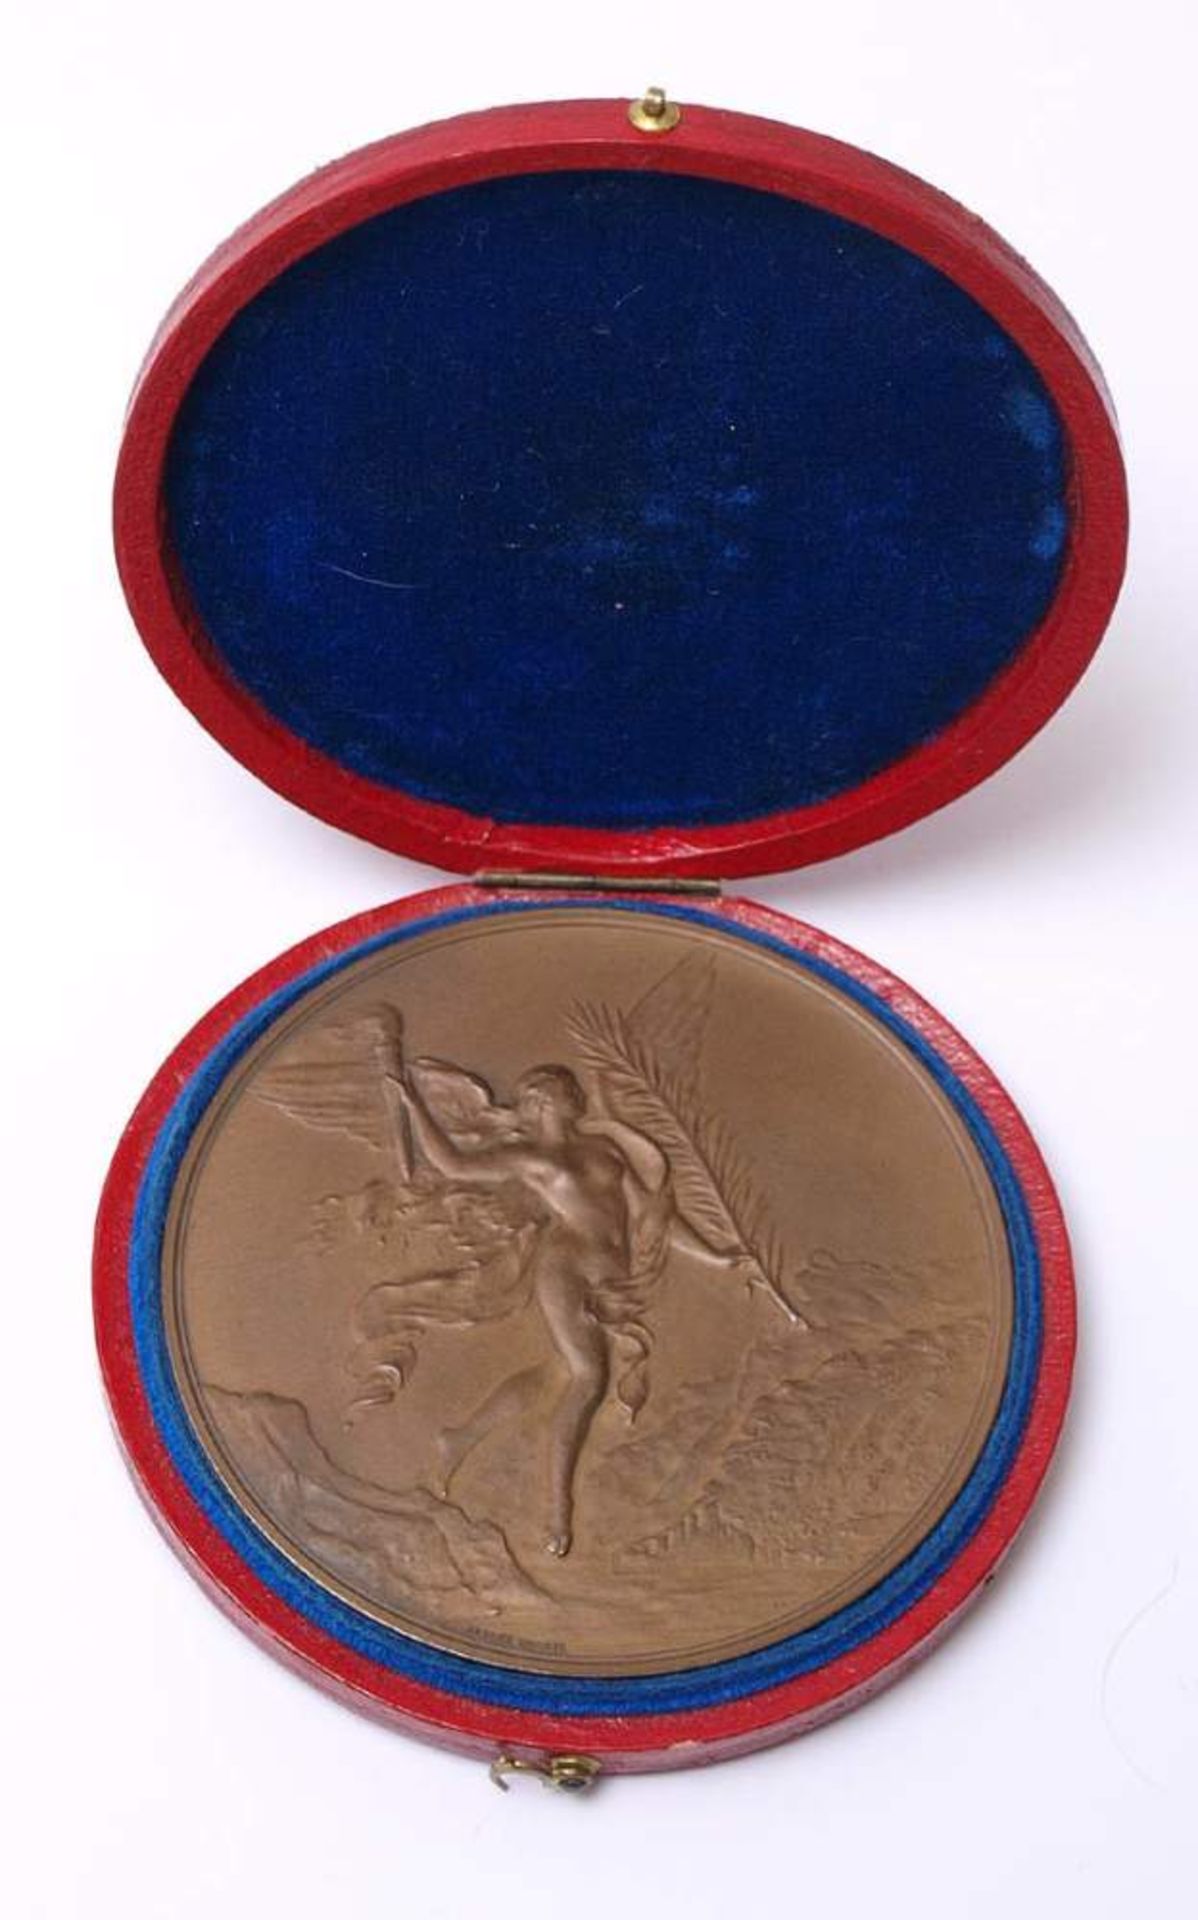 Dubois, Alphée, 1831 - 1905Medaille zur ersten Schweizer Bundesfeier im Jahr 1891. Bronze, verso